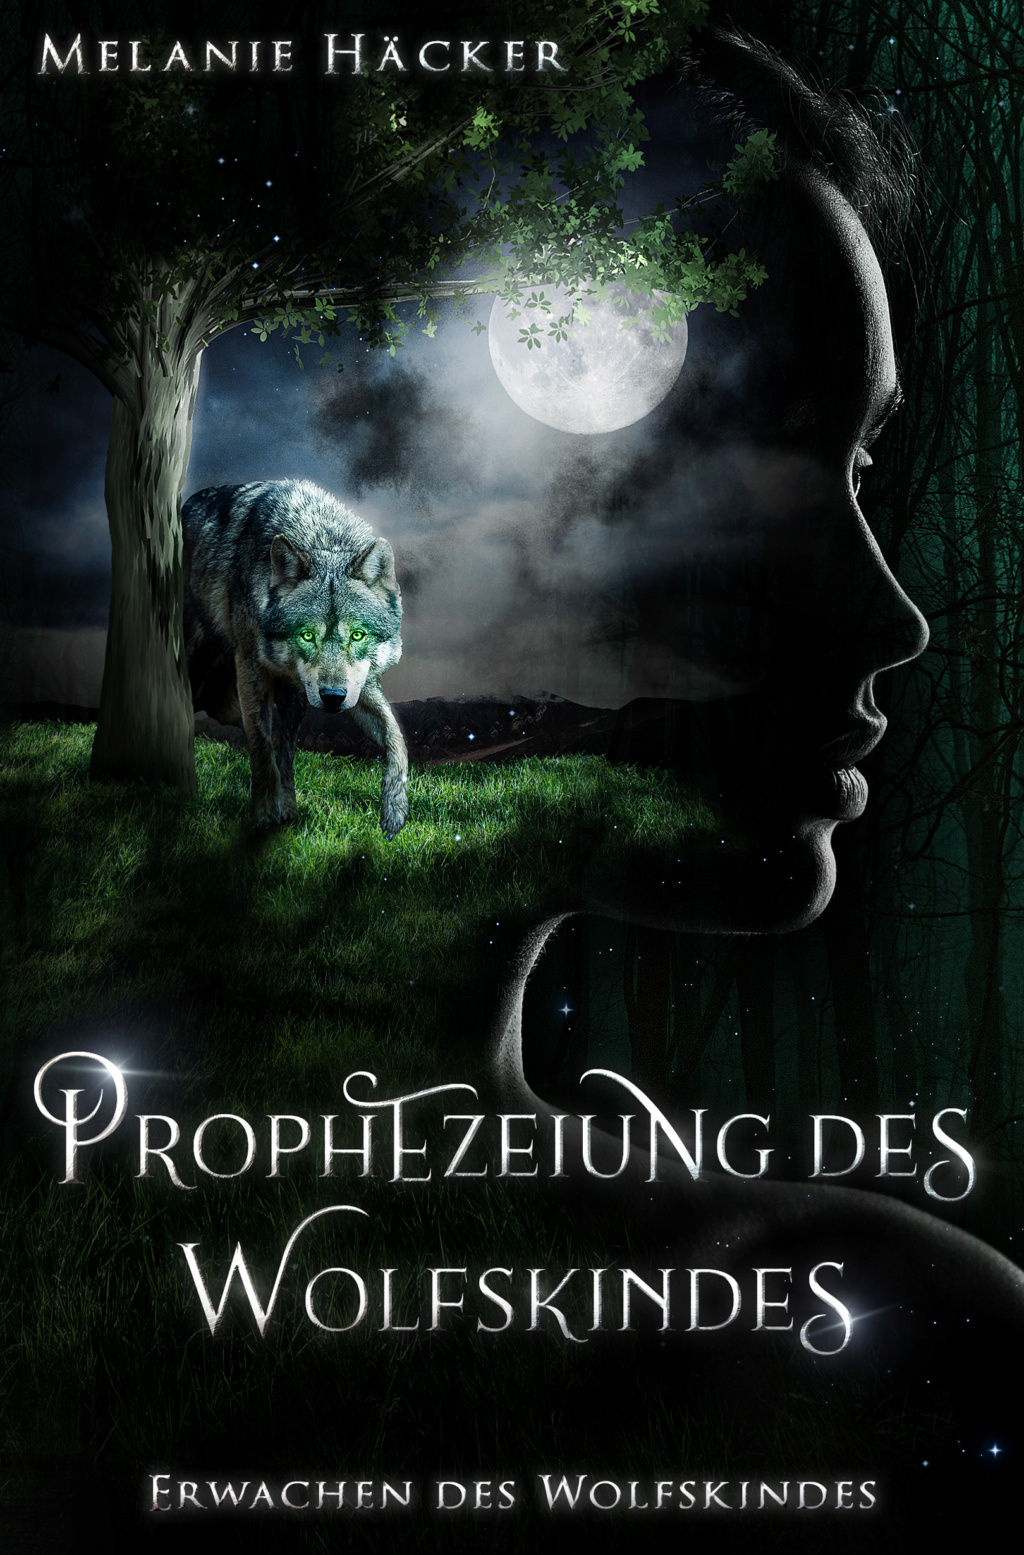  Prophezeiung des Wolfskindes - Erwachen des Wolfskindes, Melanie Häcker Prophe12